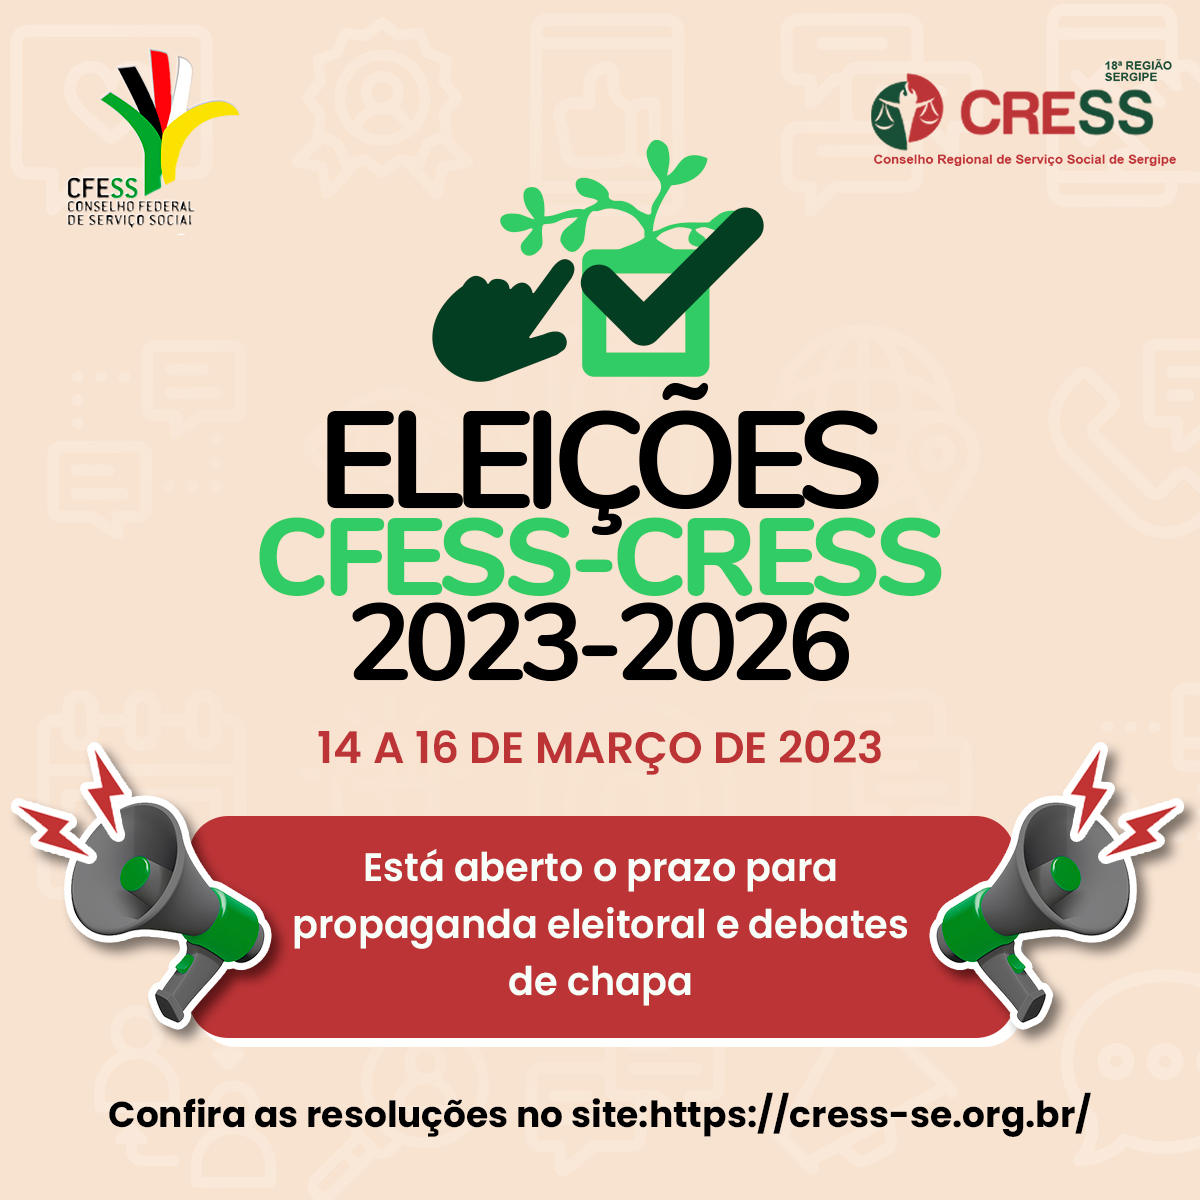 CRESS-SE informa abertura de prazo para propaganda eleitoral de chapa e divulga resoluções